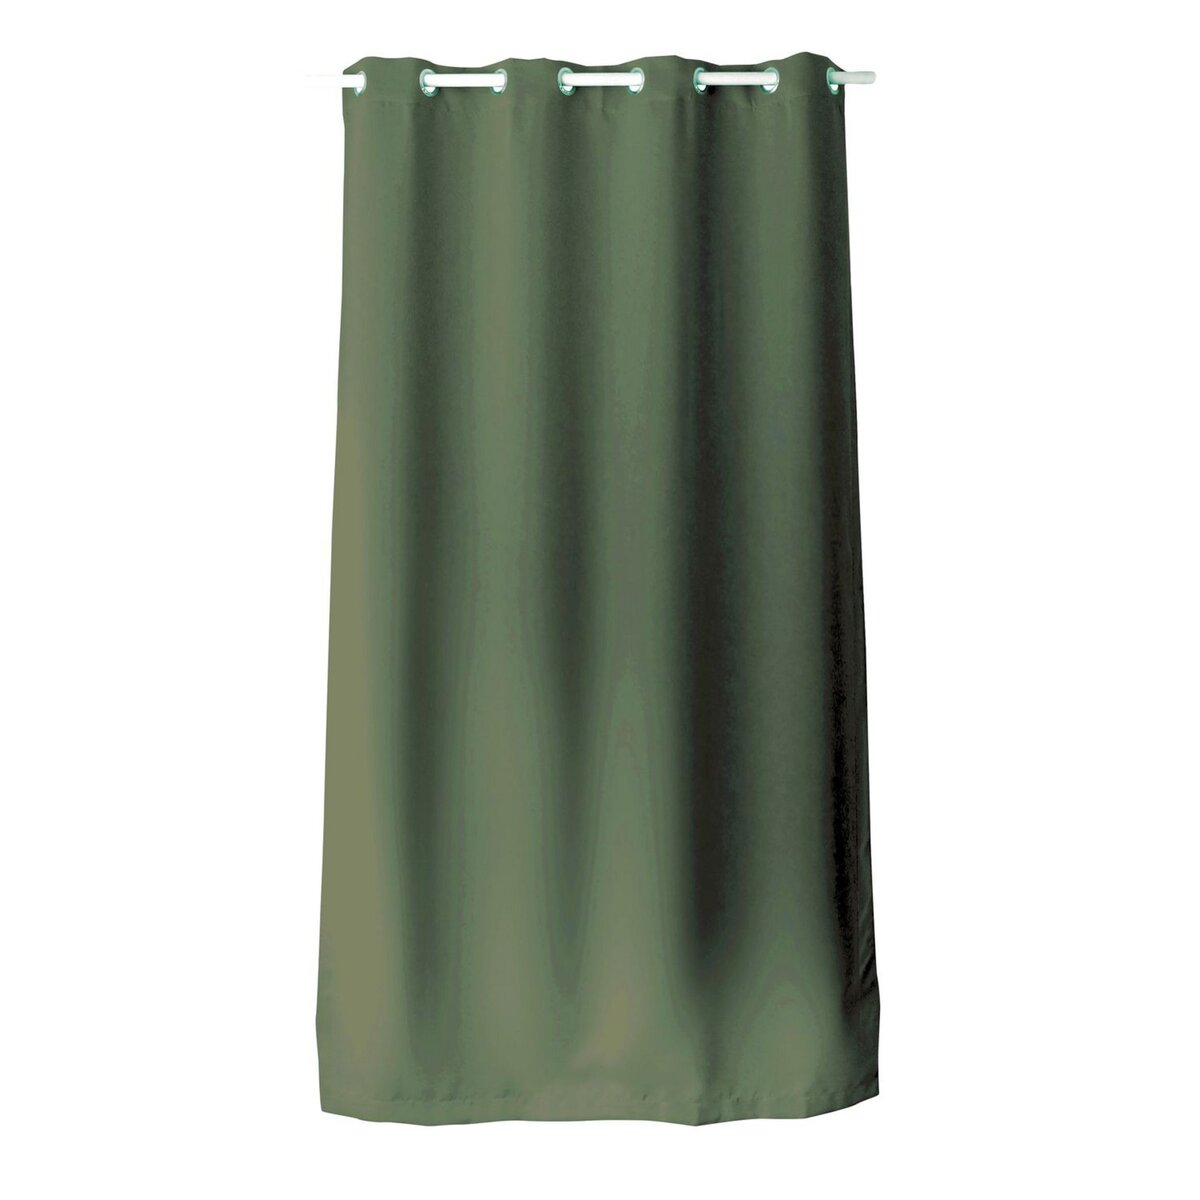 TOILINUX Rideau en toile unie Basic à 8 œillets - Longueur 240 cm x largeur 140 cm - Vert argile